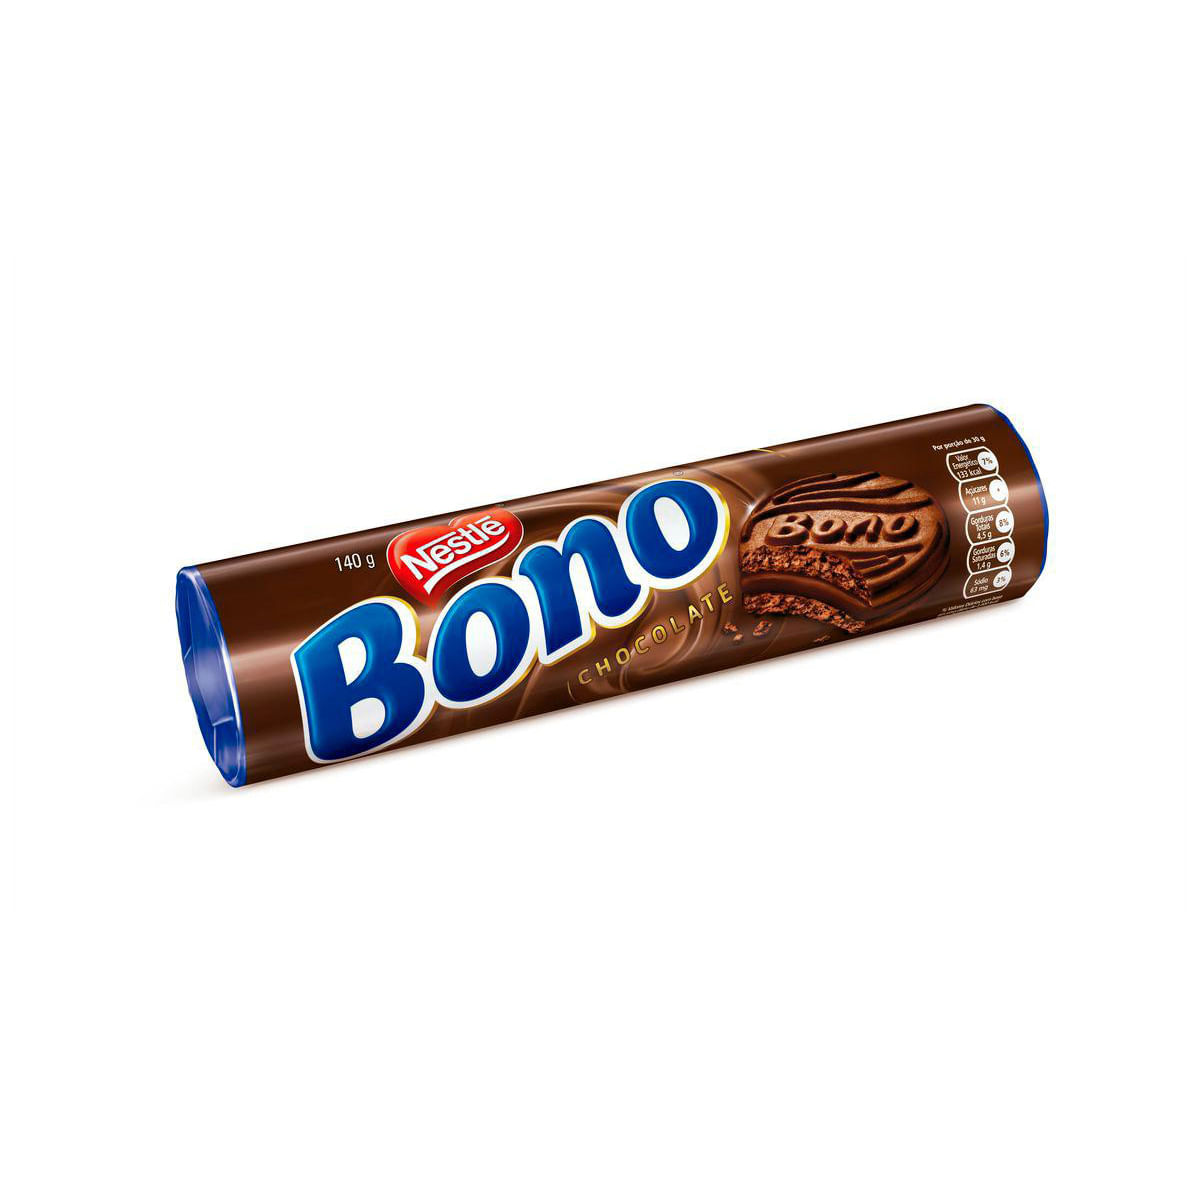 biscoito-recheado-chocolate-bono-140g-1.jpg